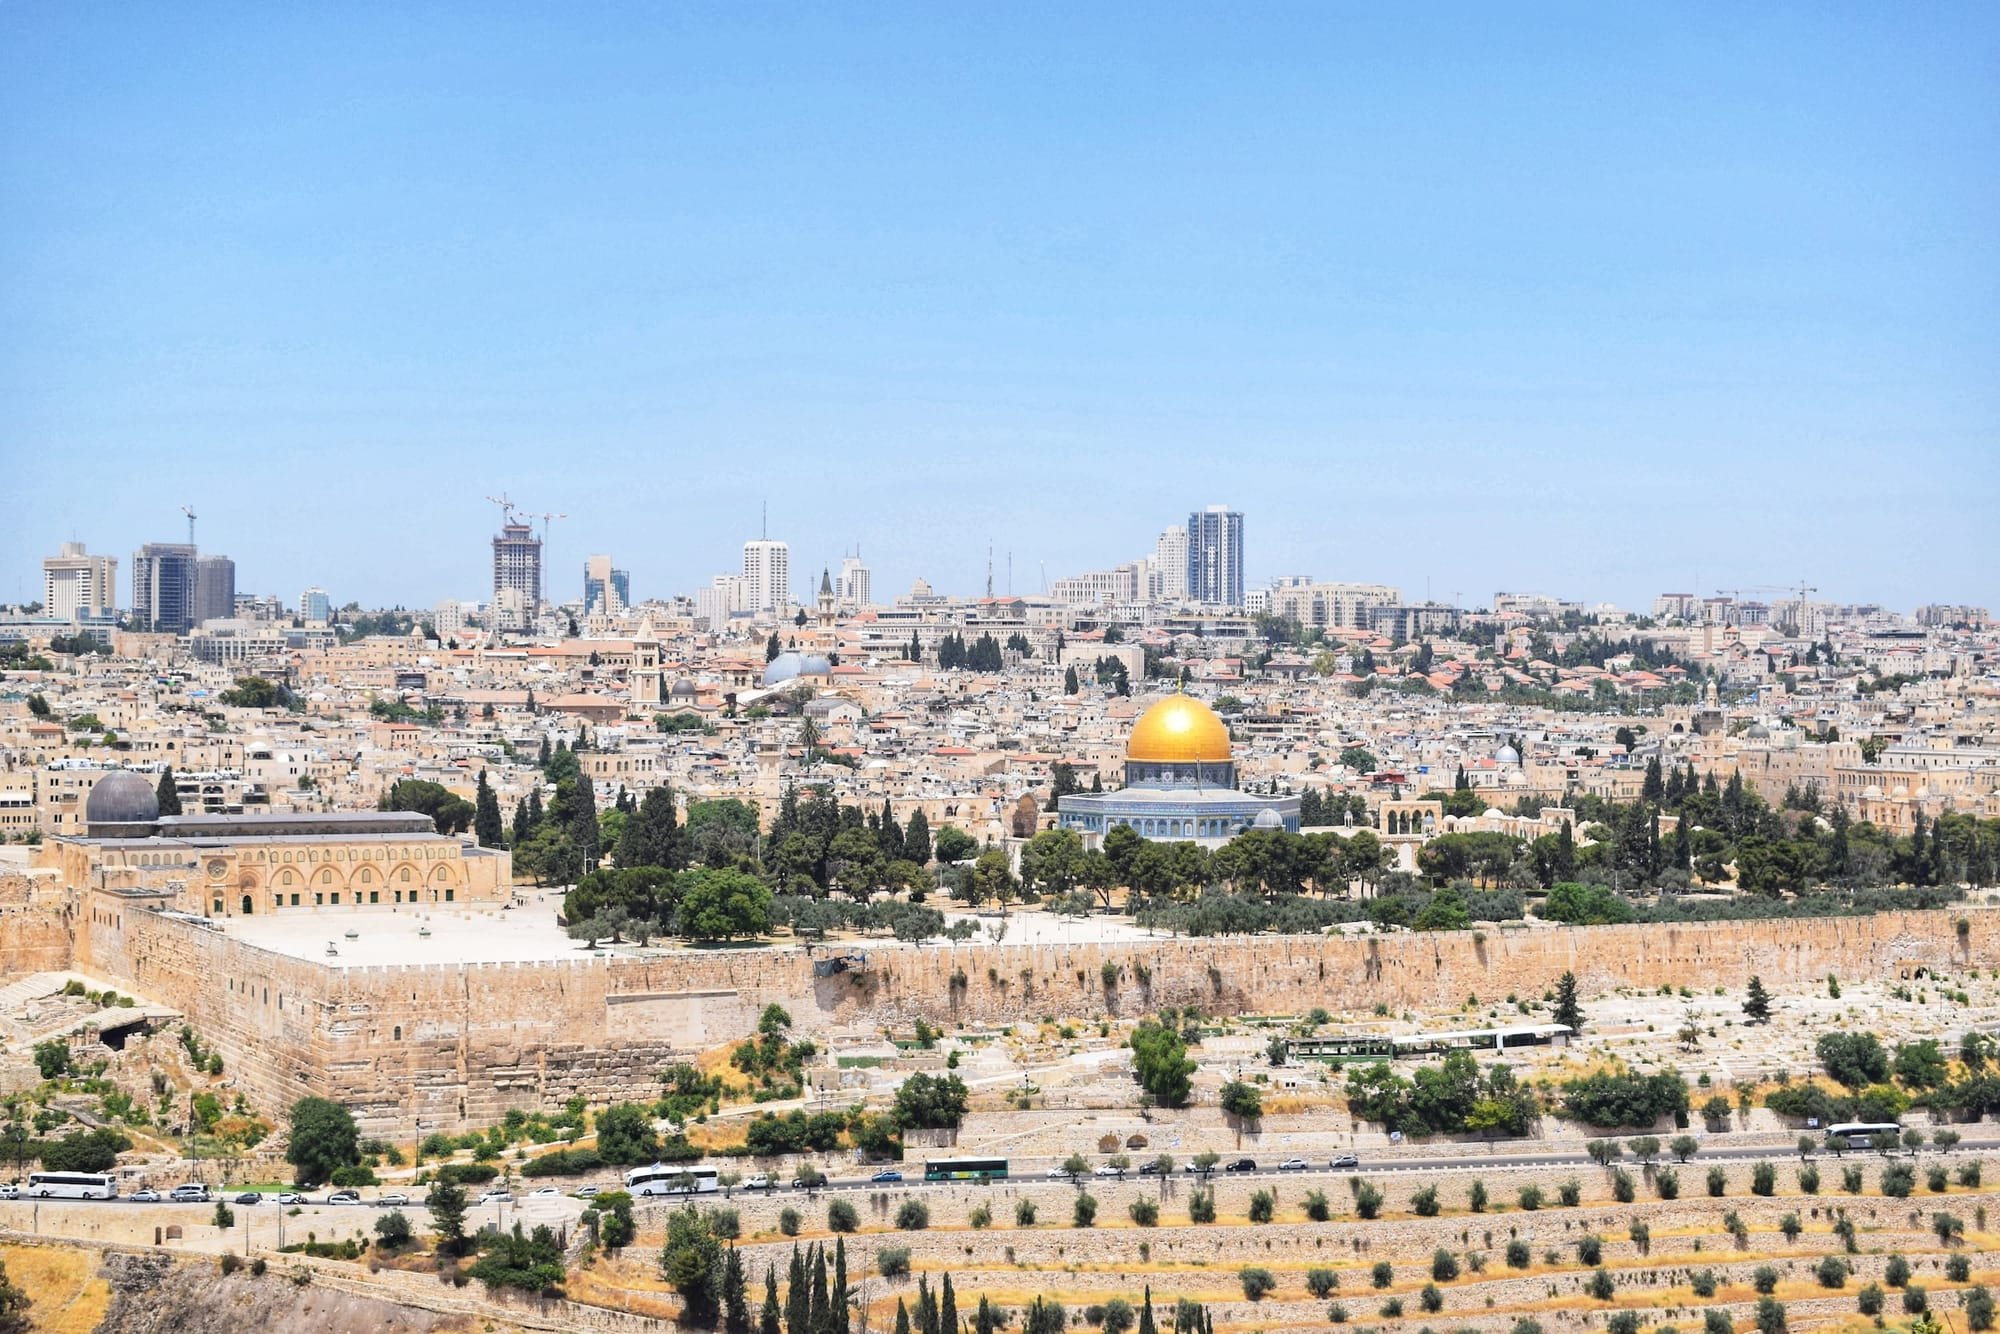 חג הסיגד​ / התגעגעתי לירושלים, התגעגעתי/ משה"ח תרבות יהודית ישראלית